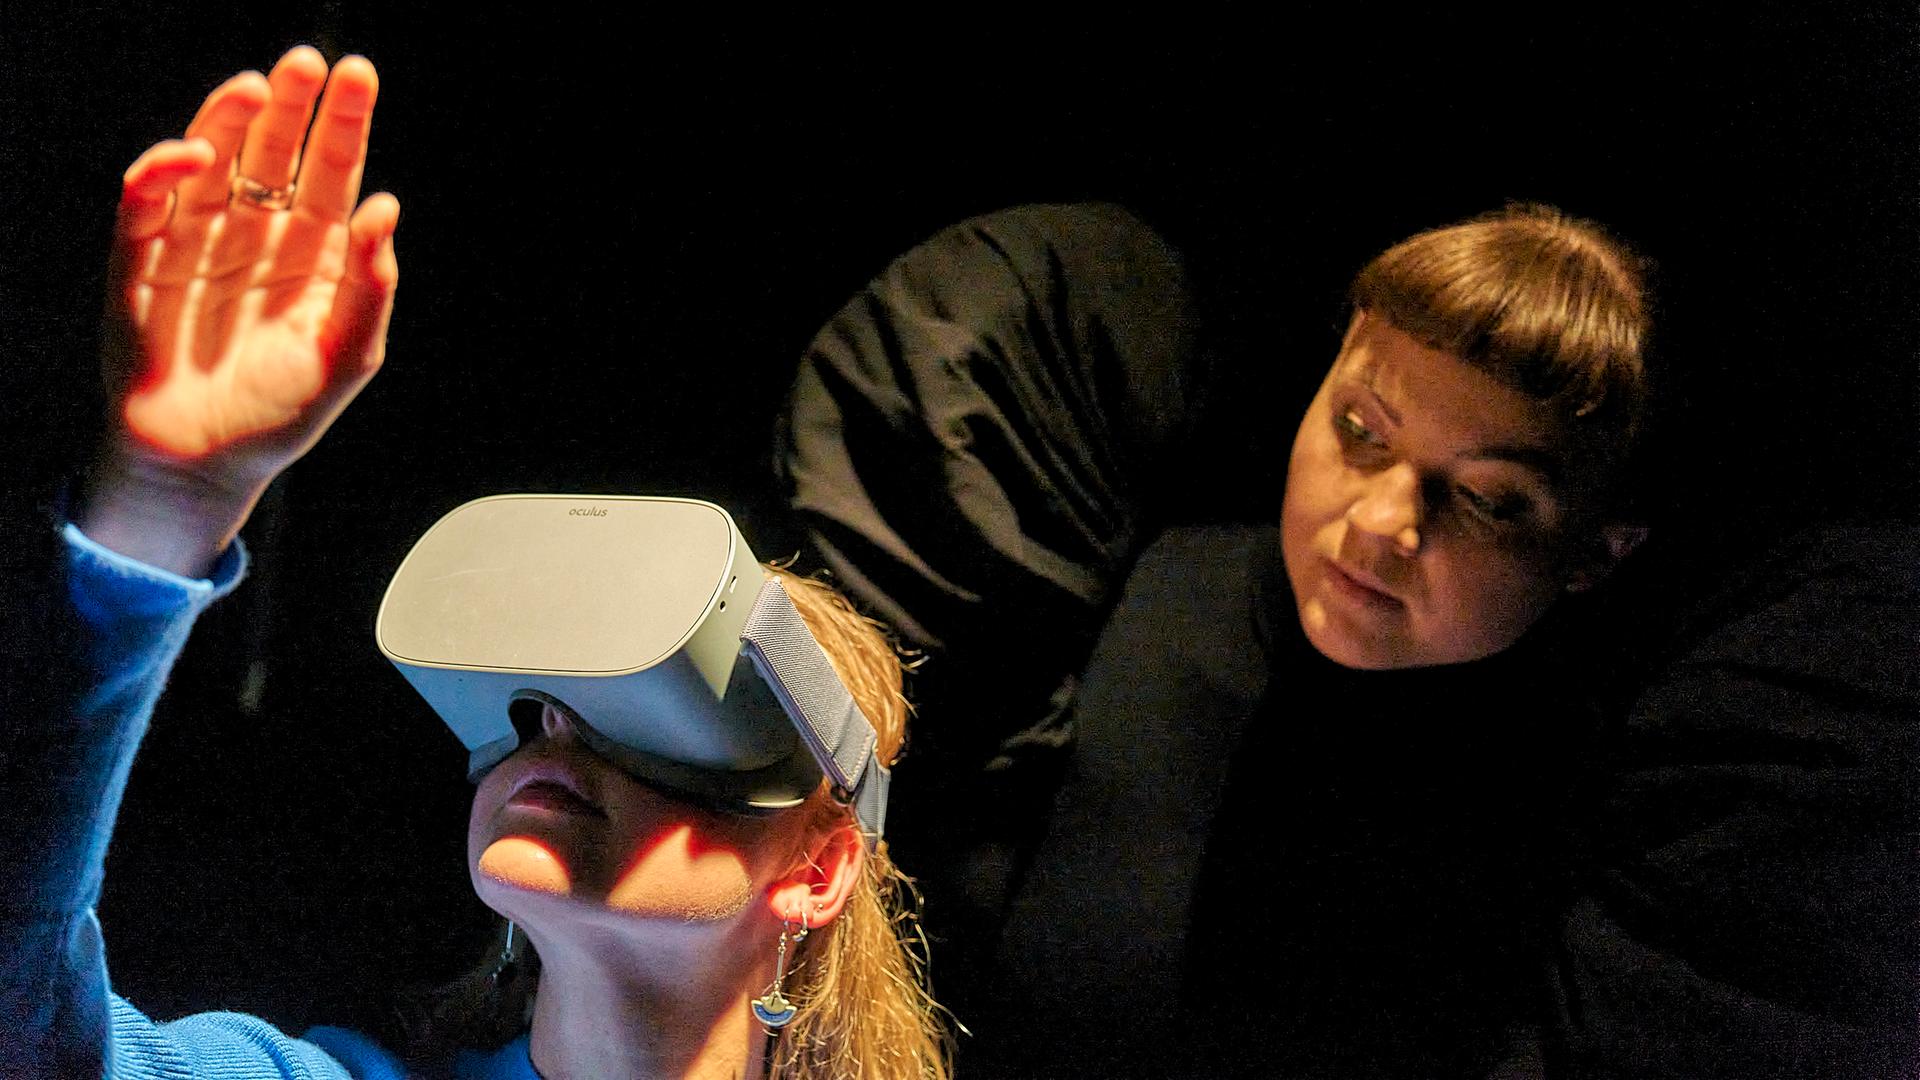 Eine Zuschauerin von "Berlau" im BE trägt eine VR-Brille. Hinter ihr eine Schauspielerin mit schwarzen Engelsflügeln.